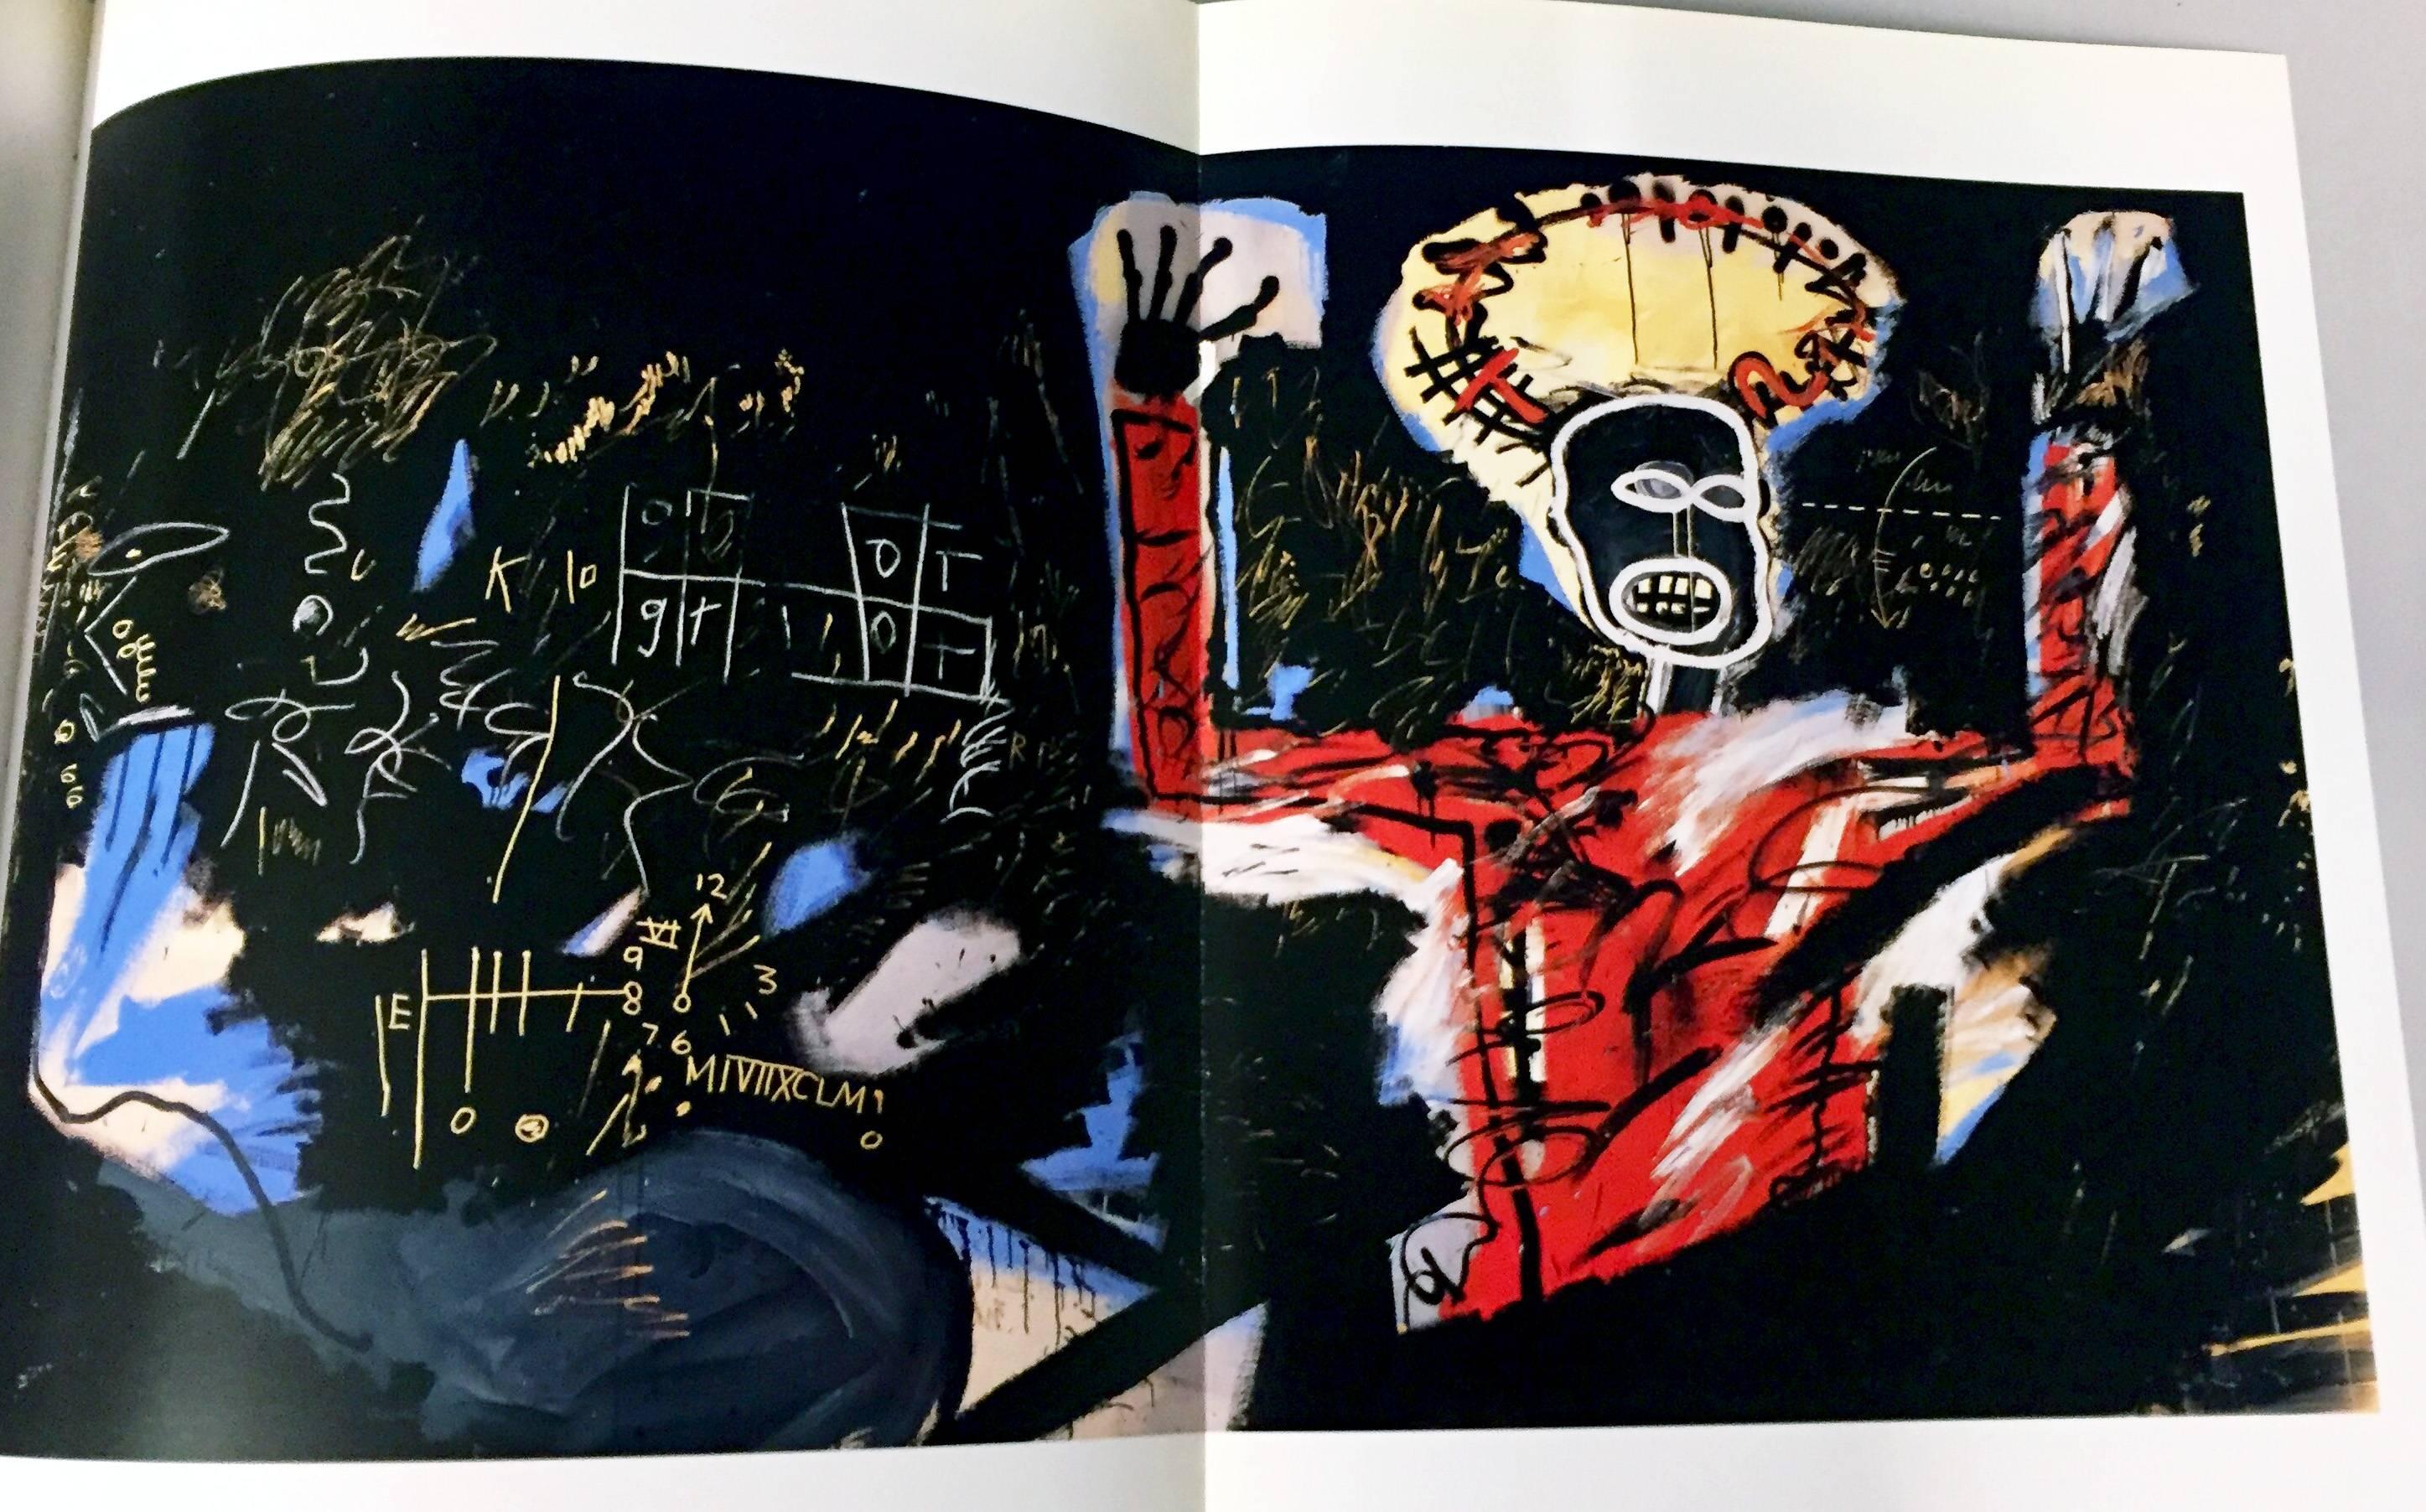 Jean-Michel Basquiat France 1992 :
Catalogue d'exposition original, pour Jean-Michel Basquiat - Une rétrospective ; Musée Cantini, Marseille, France, 1992.

Couverture illustrée avec rabats, 192 pages ; environ 30 x 23 cm (10 x 12 pouces).

Environ